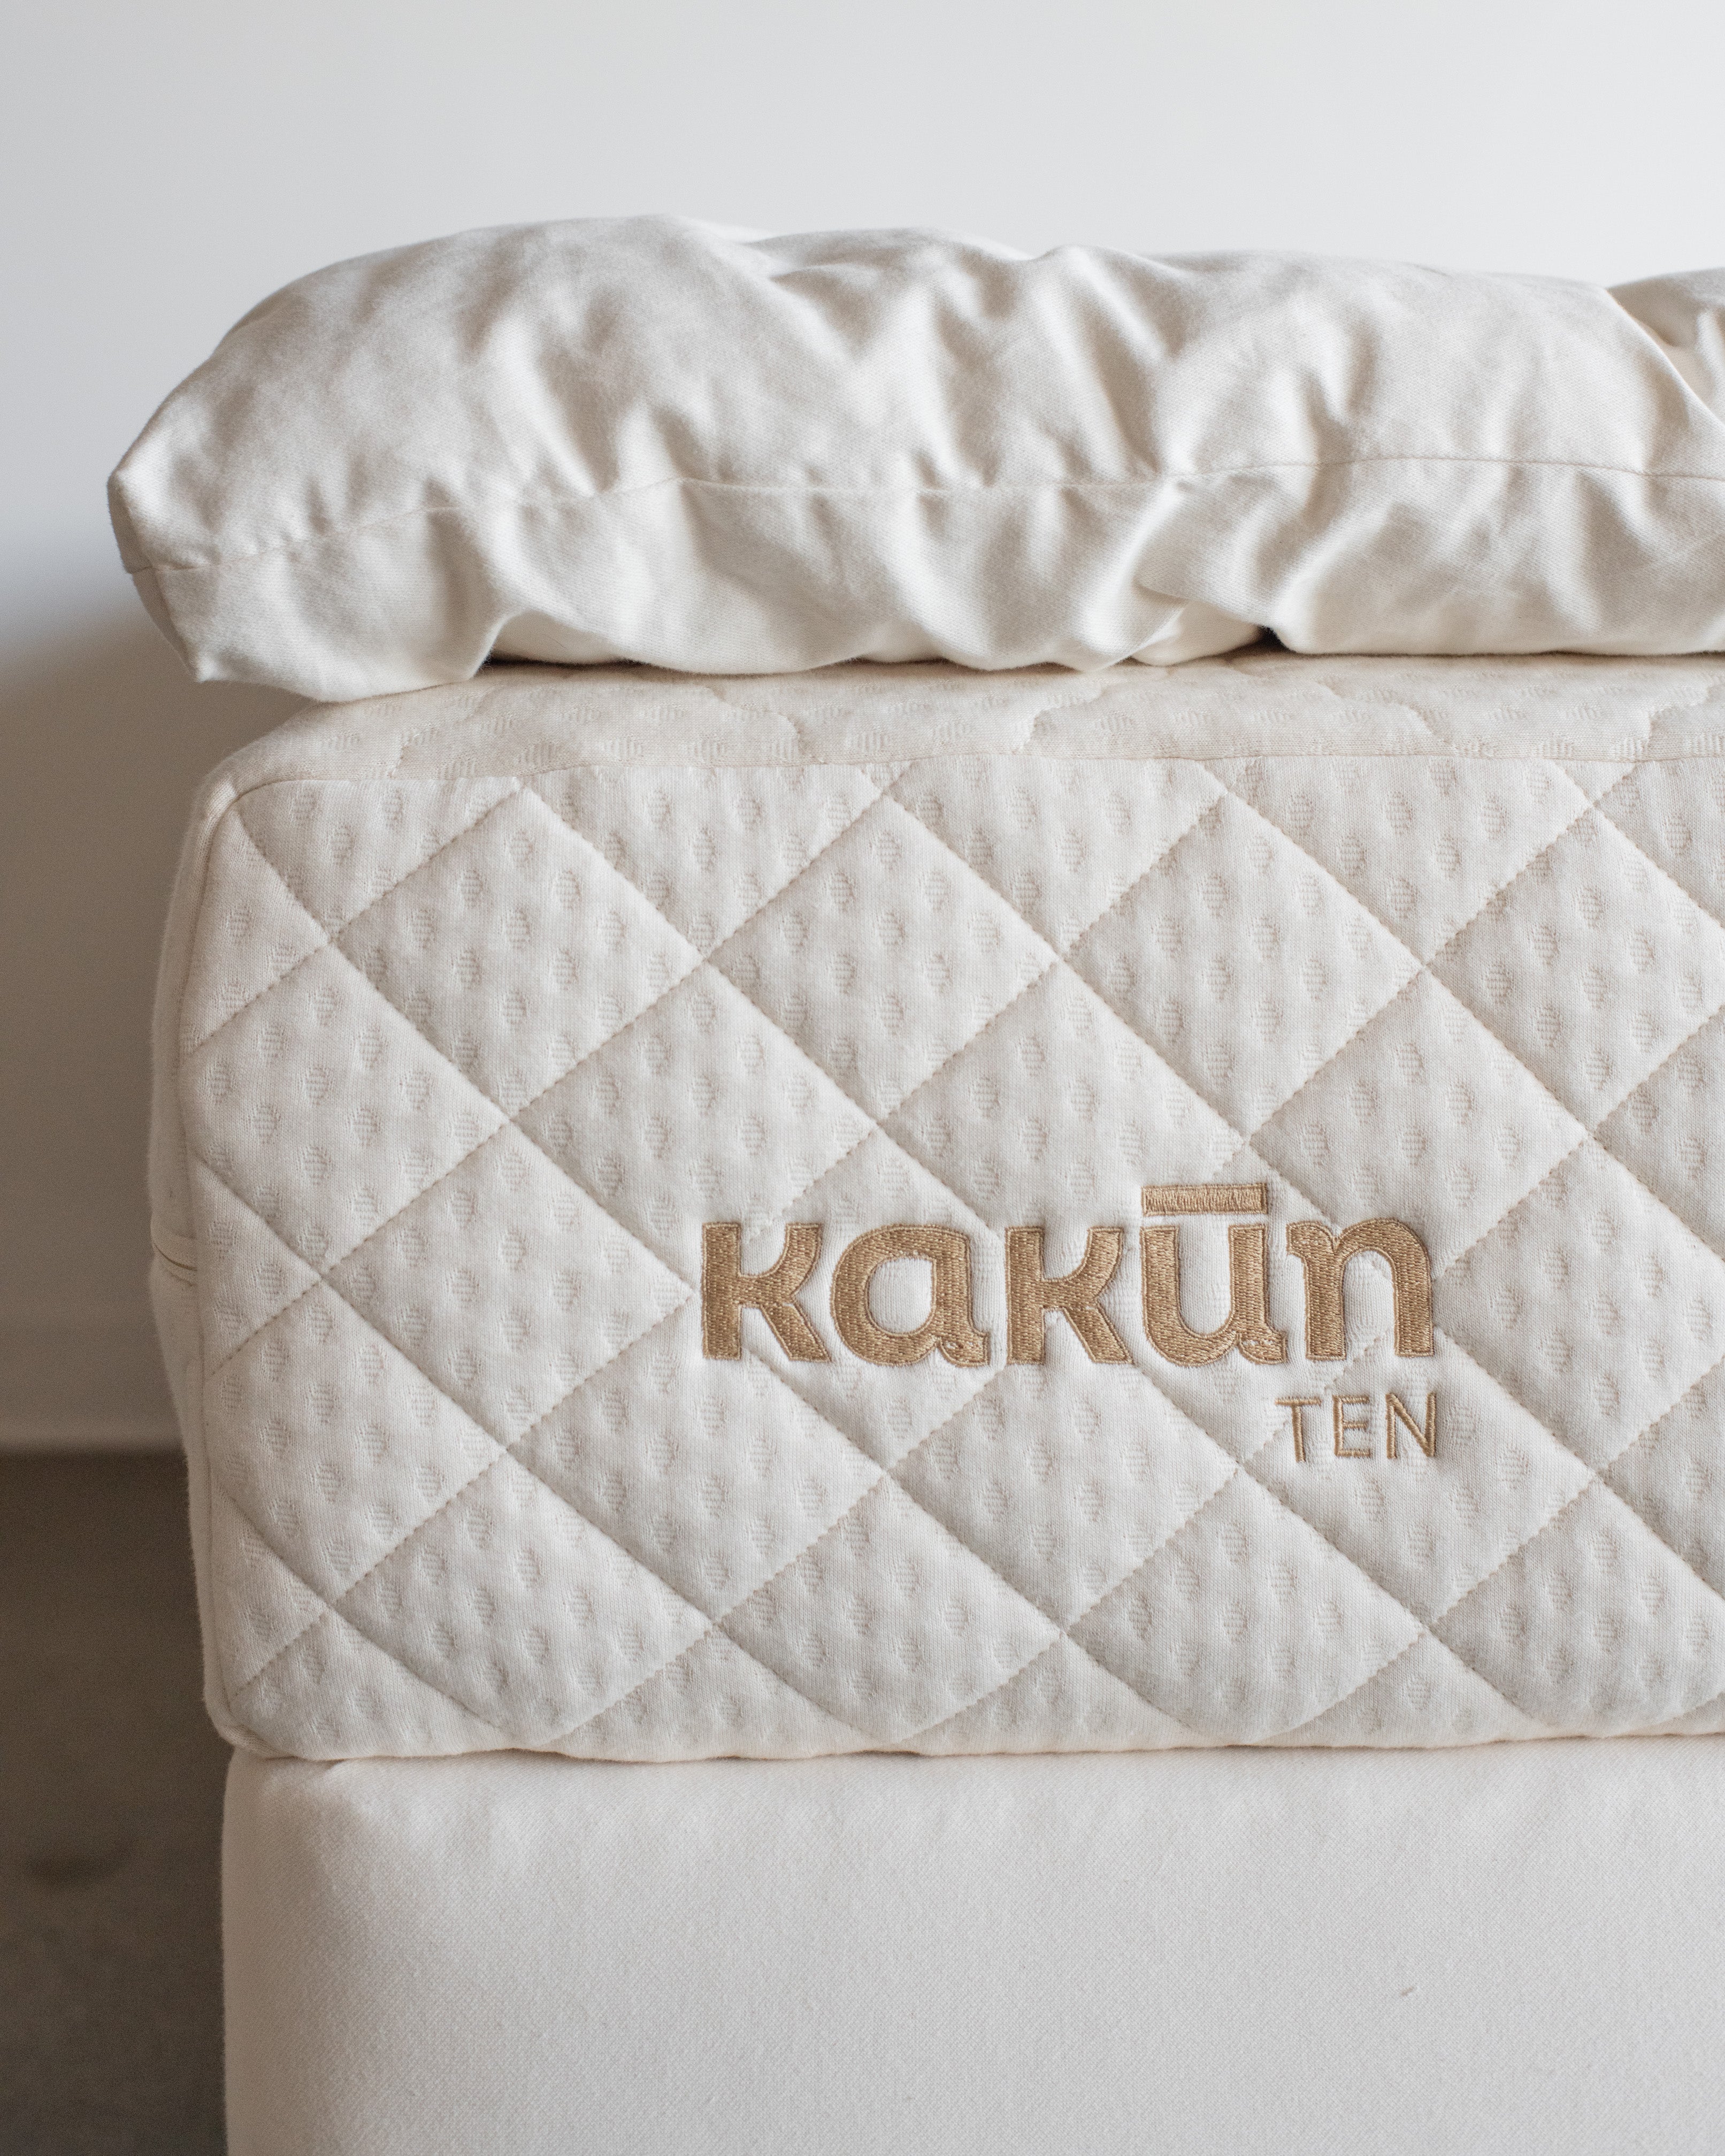 Kakun Premium Eco Wool Mattress Topper